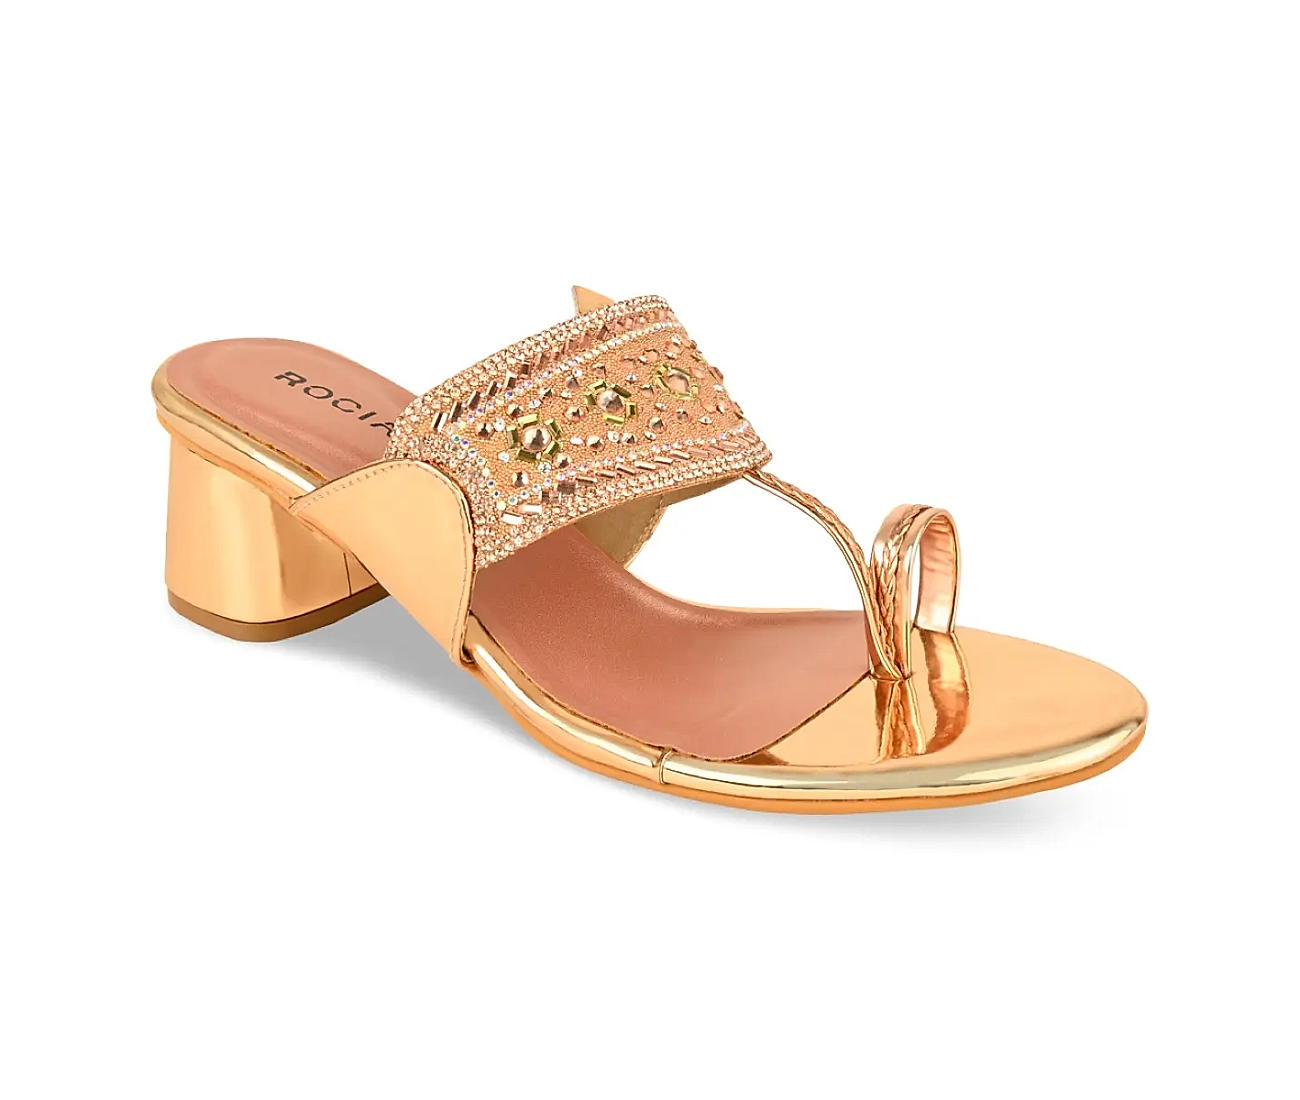 Buy Women Gold Ethnic Sandals Online | SKU: 40-156-15-37-Metro Shoes